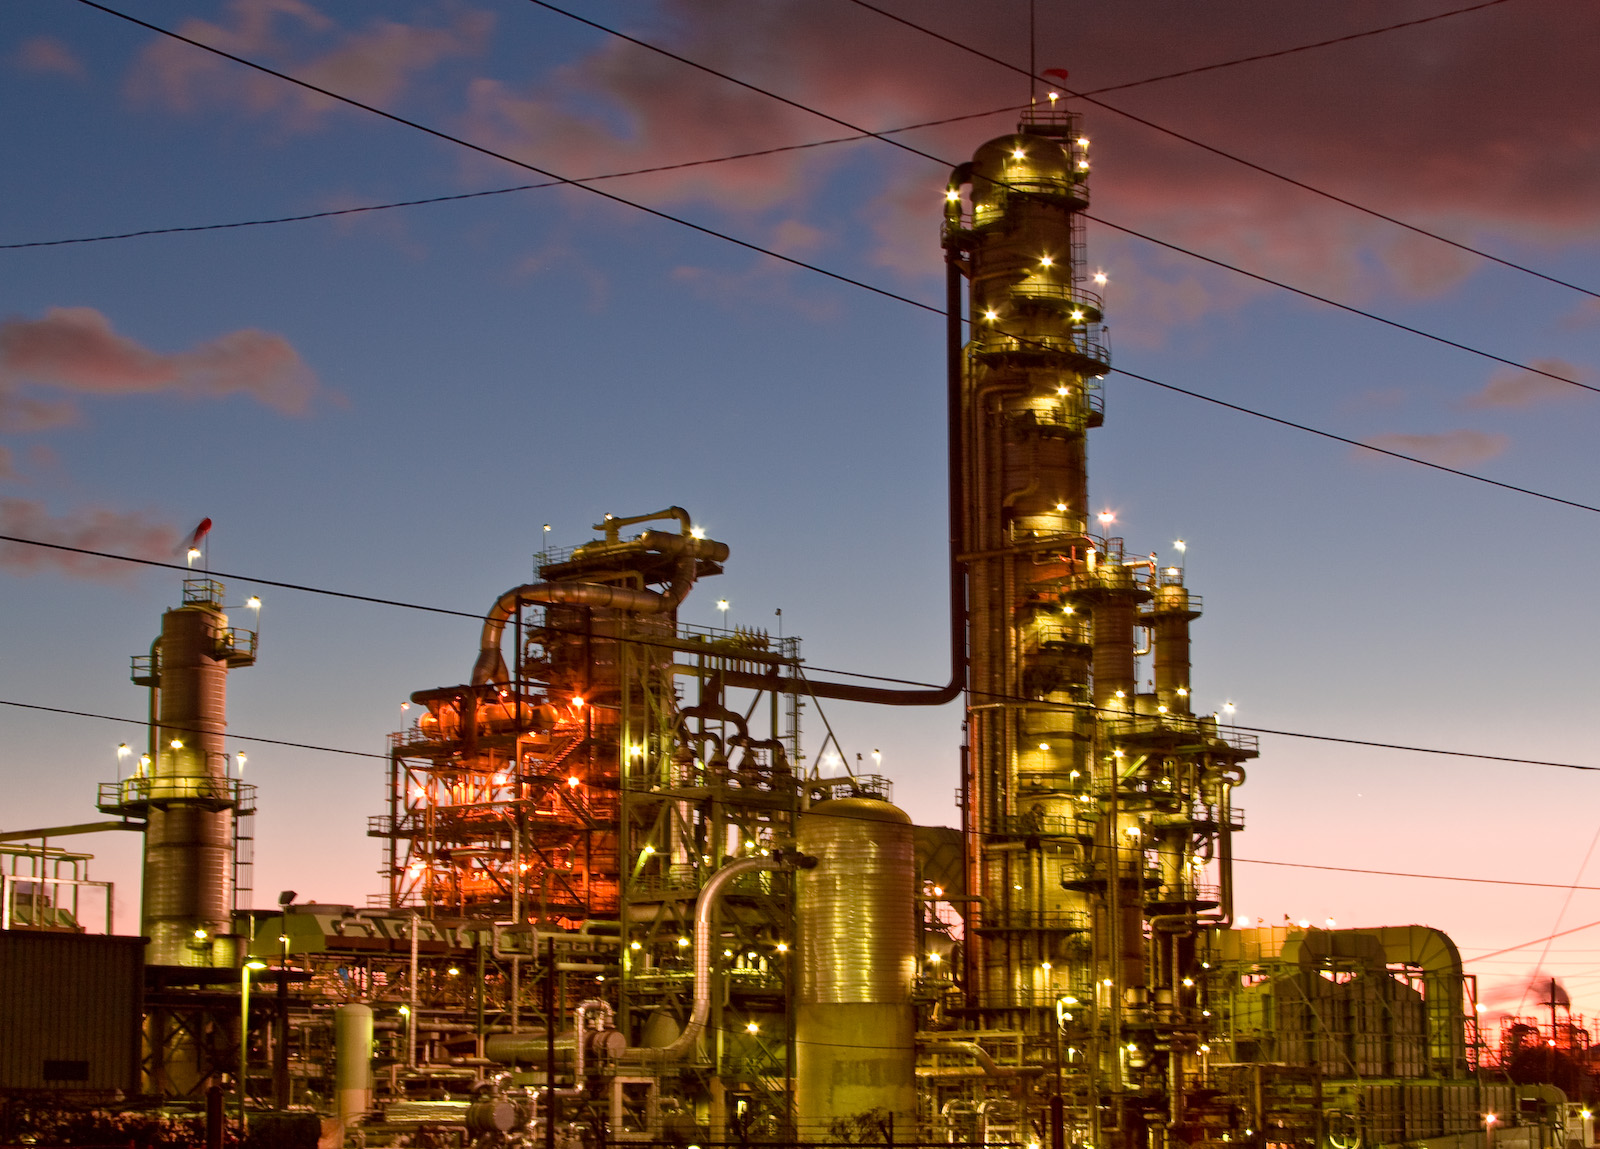 Chevron's El Segundo refinery